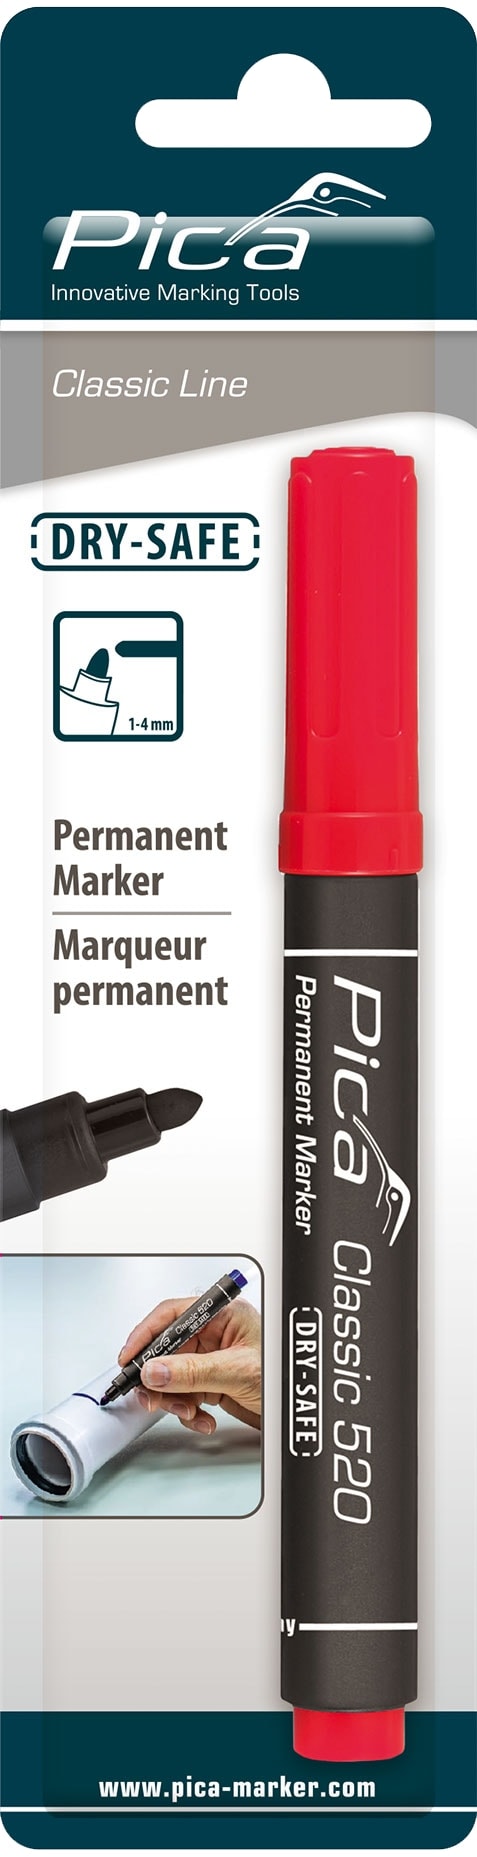 PICA Classic Permanent Marker, 520/40/SB, Rundspitze, rot